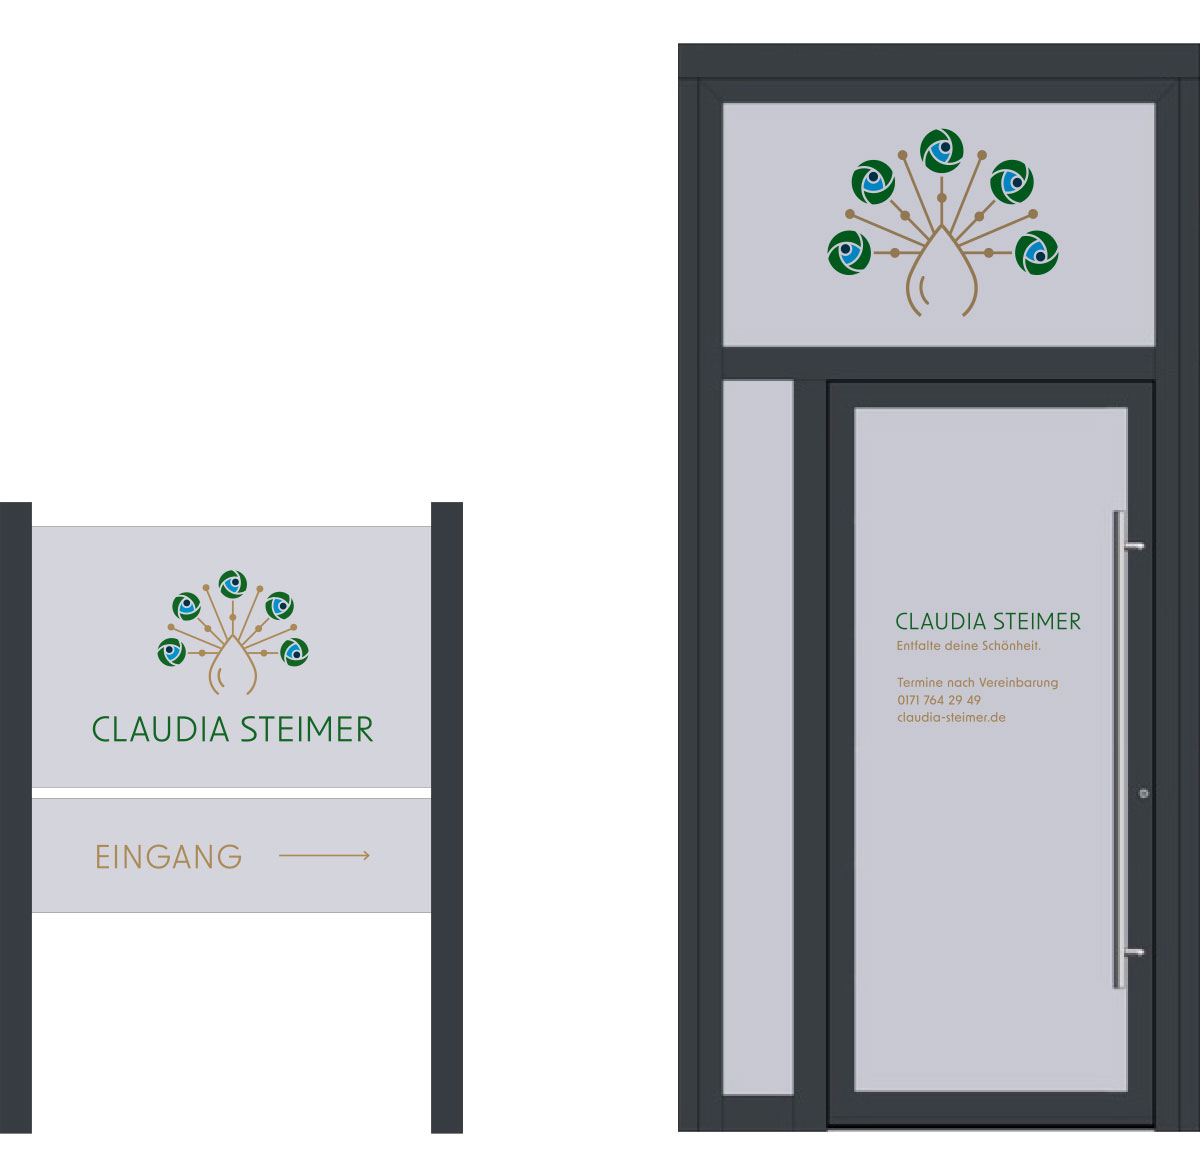 Eingangstür und Firmenschild Claudia Steimer